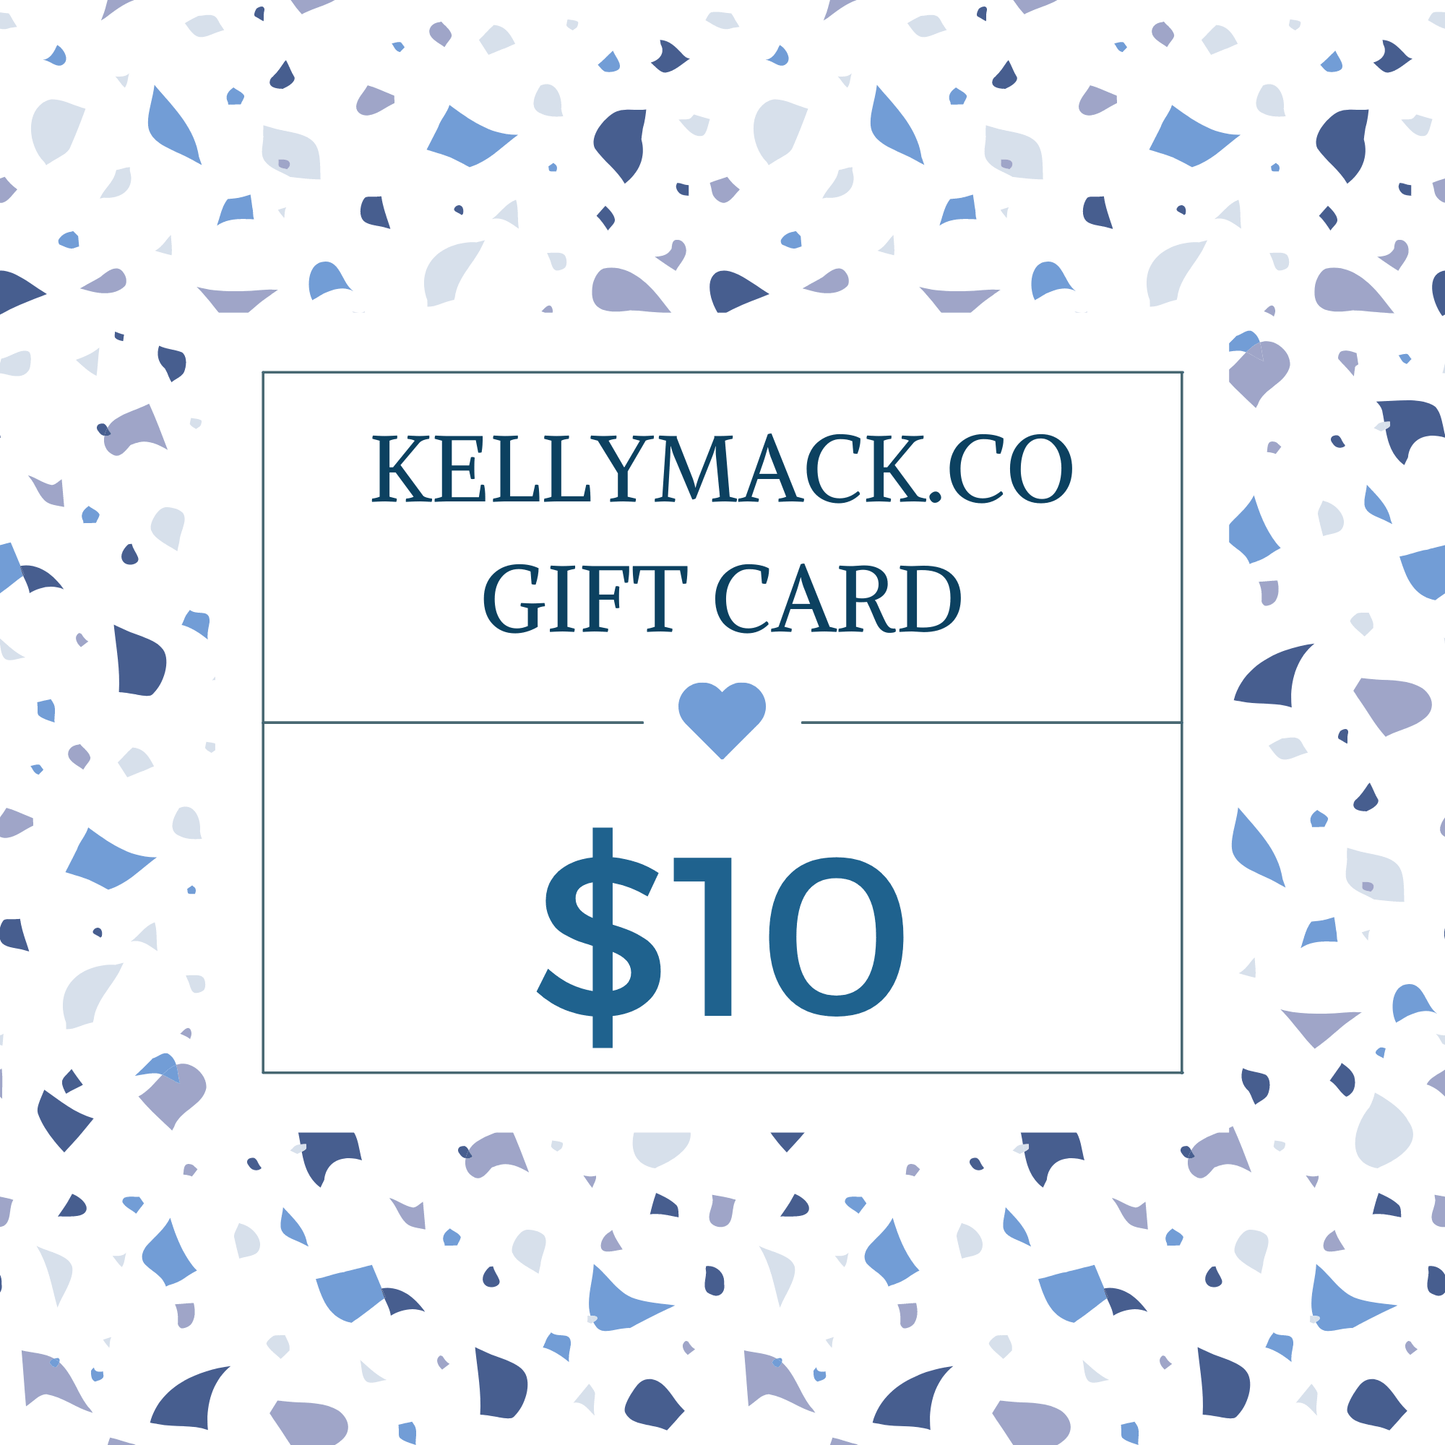 KellyMack.Co gift card $10.00 KellyMack.Co Gift Card